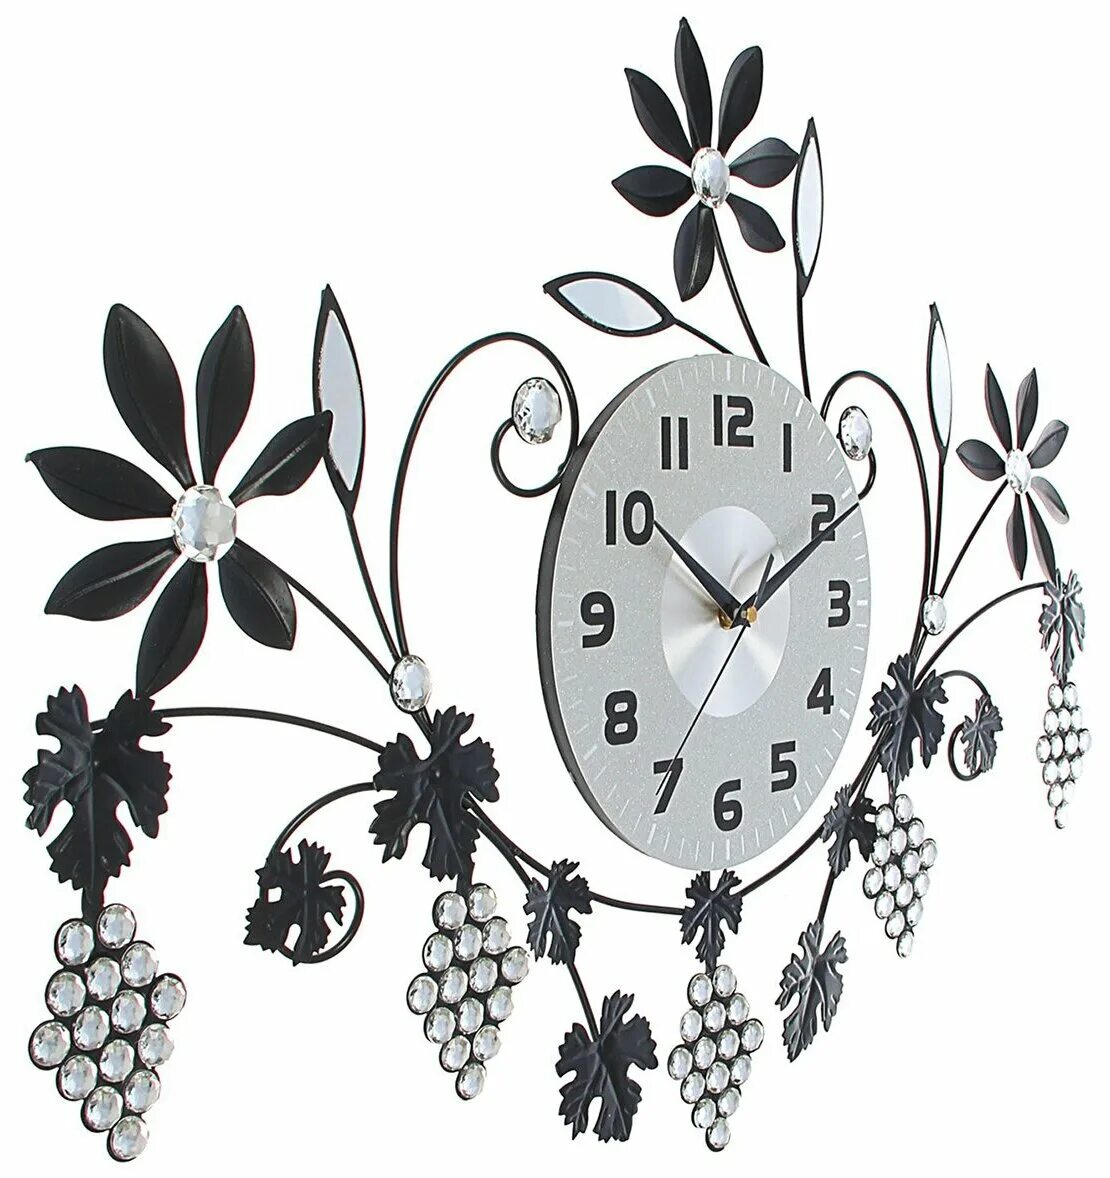 Где купить настенный. Часы настенные ажурные. Цветы (часы настенные). Оригинальные часы на кухню. Часы настенные в виде цветка.